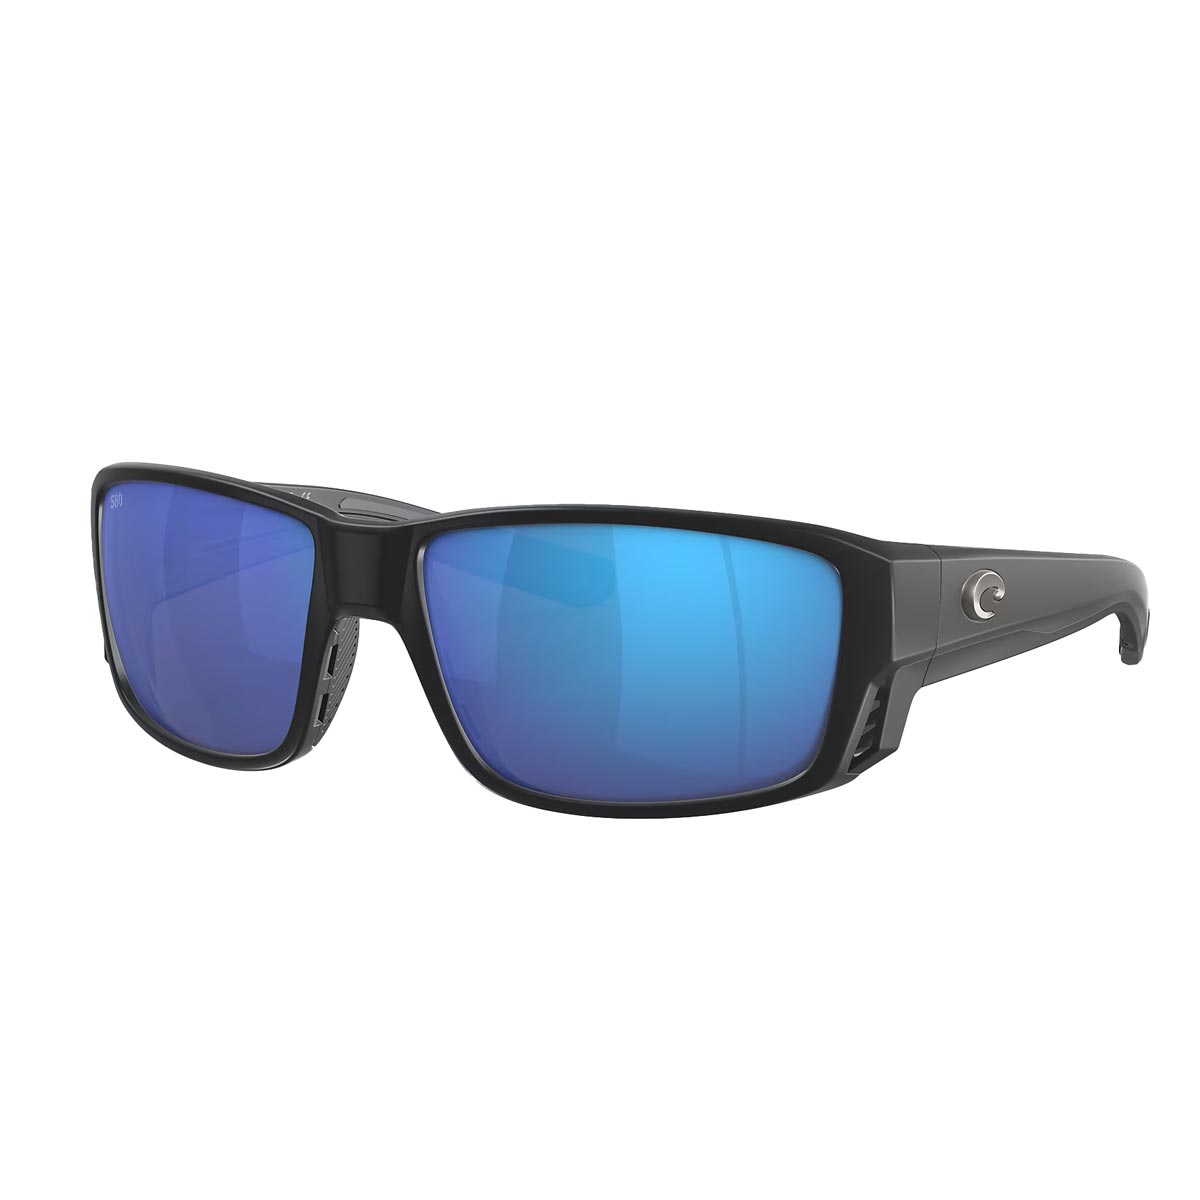 Costa Del Mar Tuna Alley Pro Sunglasses Matte Black Blue Mirror 580g